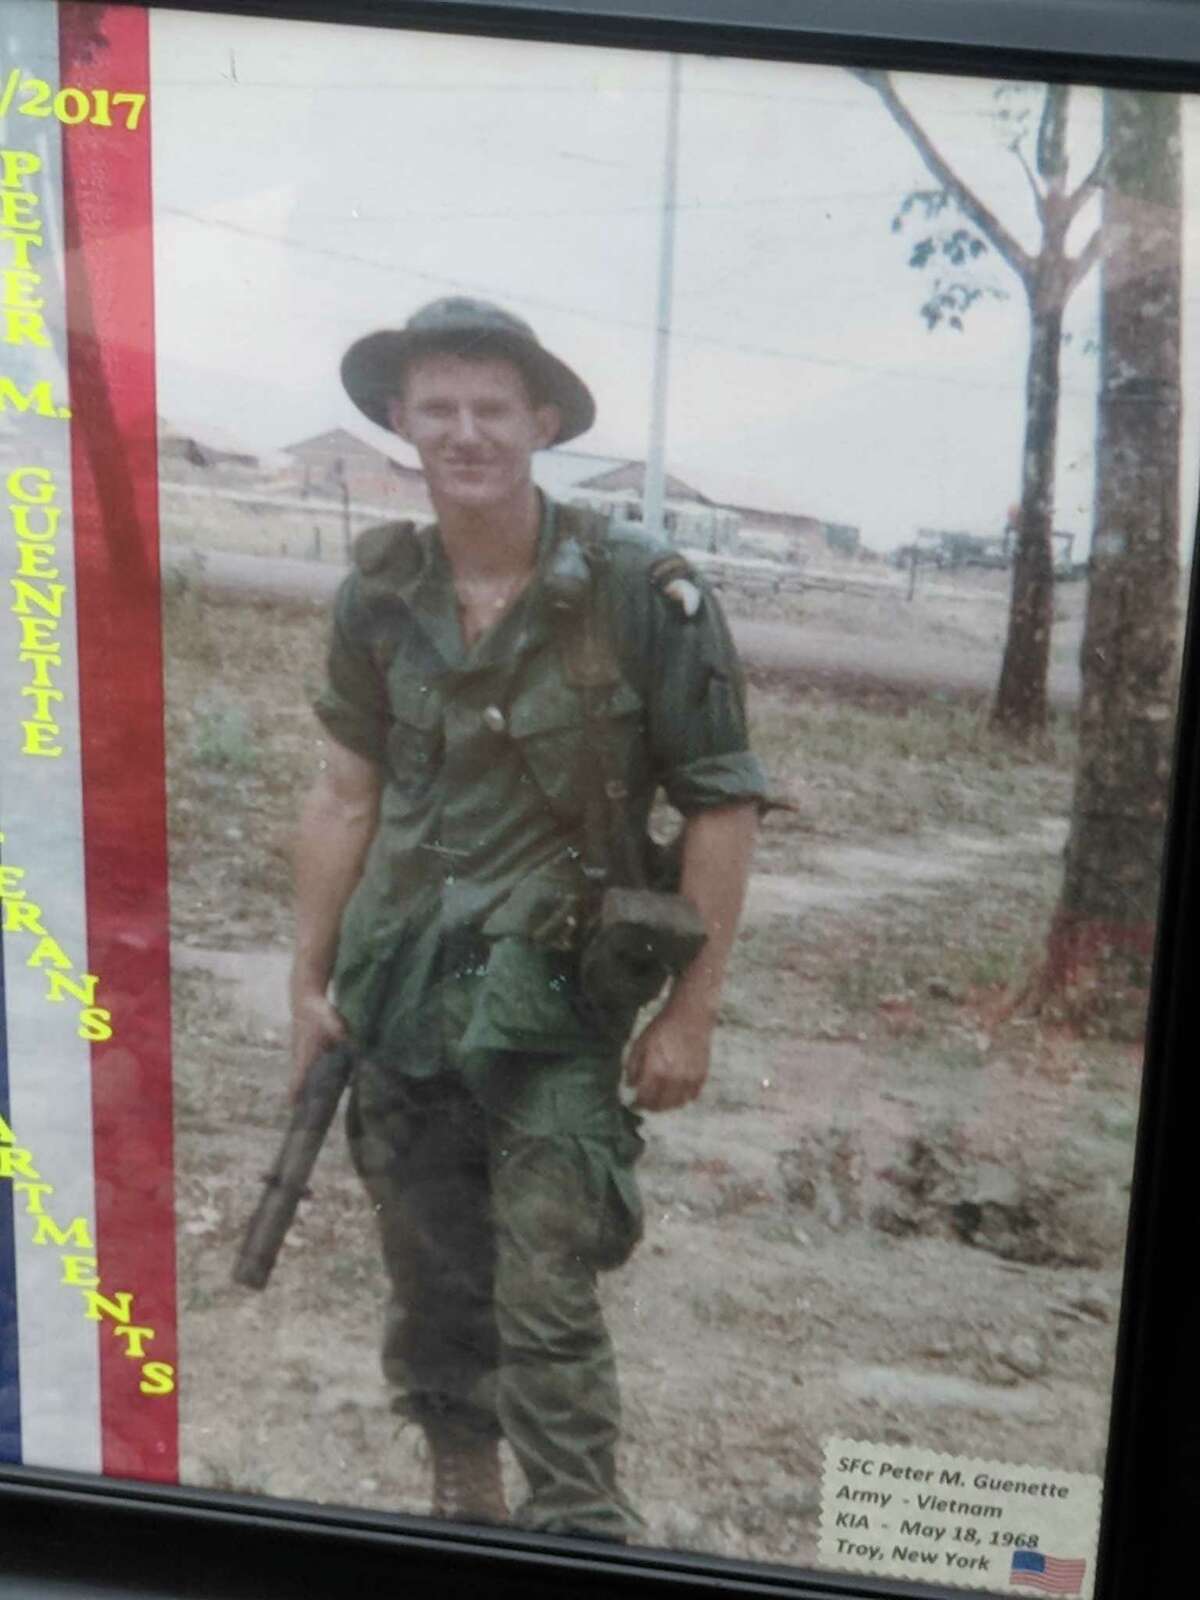 Spec. 4 Peter Guenette is on duty in South Vietnam.